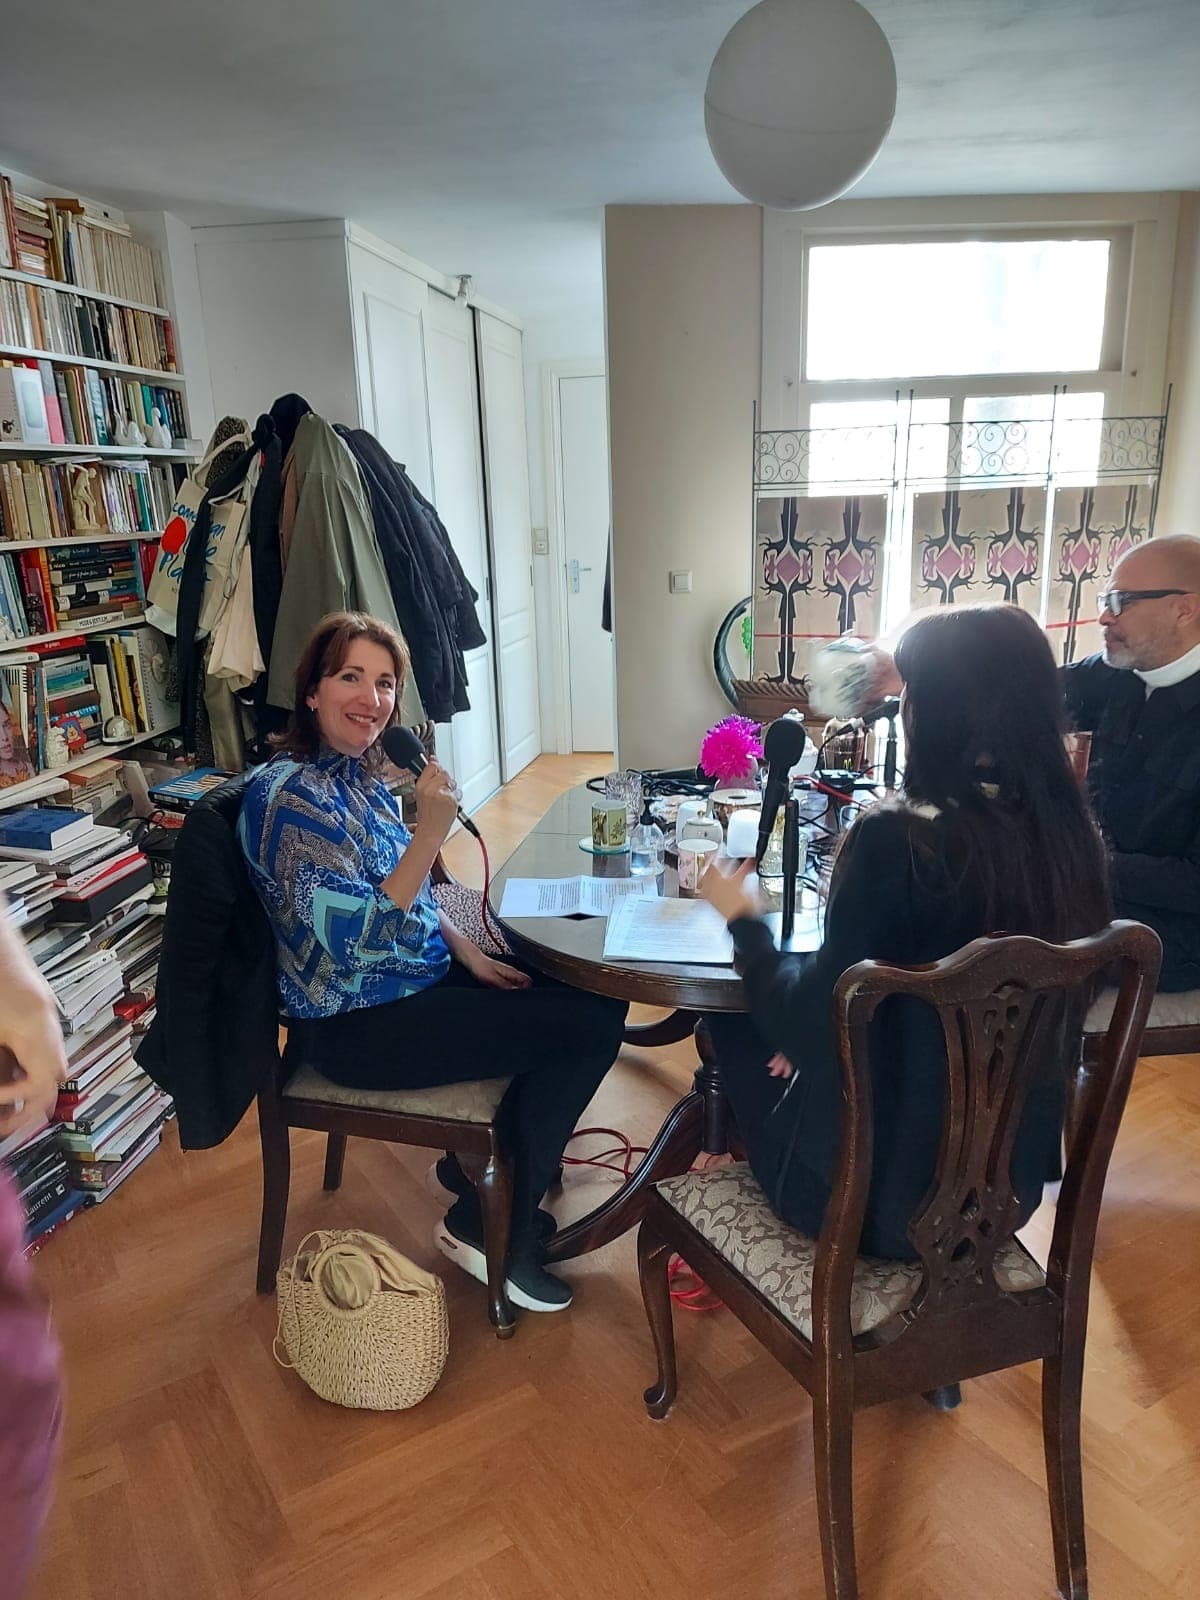 Viva Donna in podcast van Georgette Koning de Modeshow